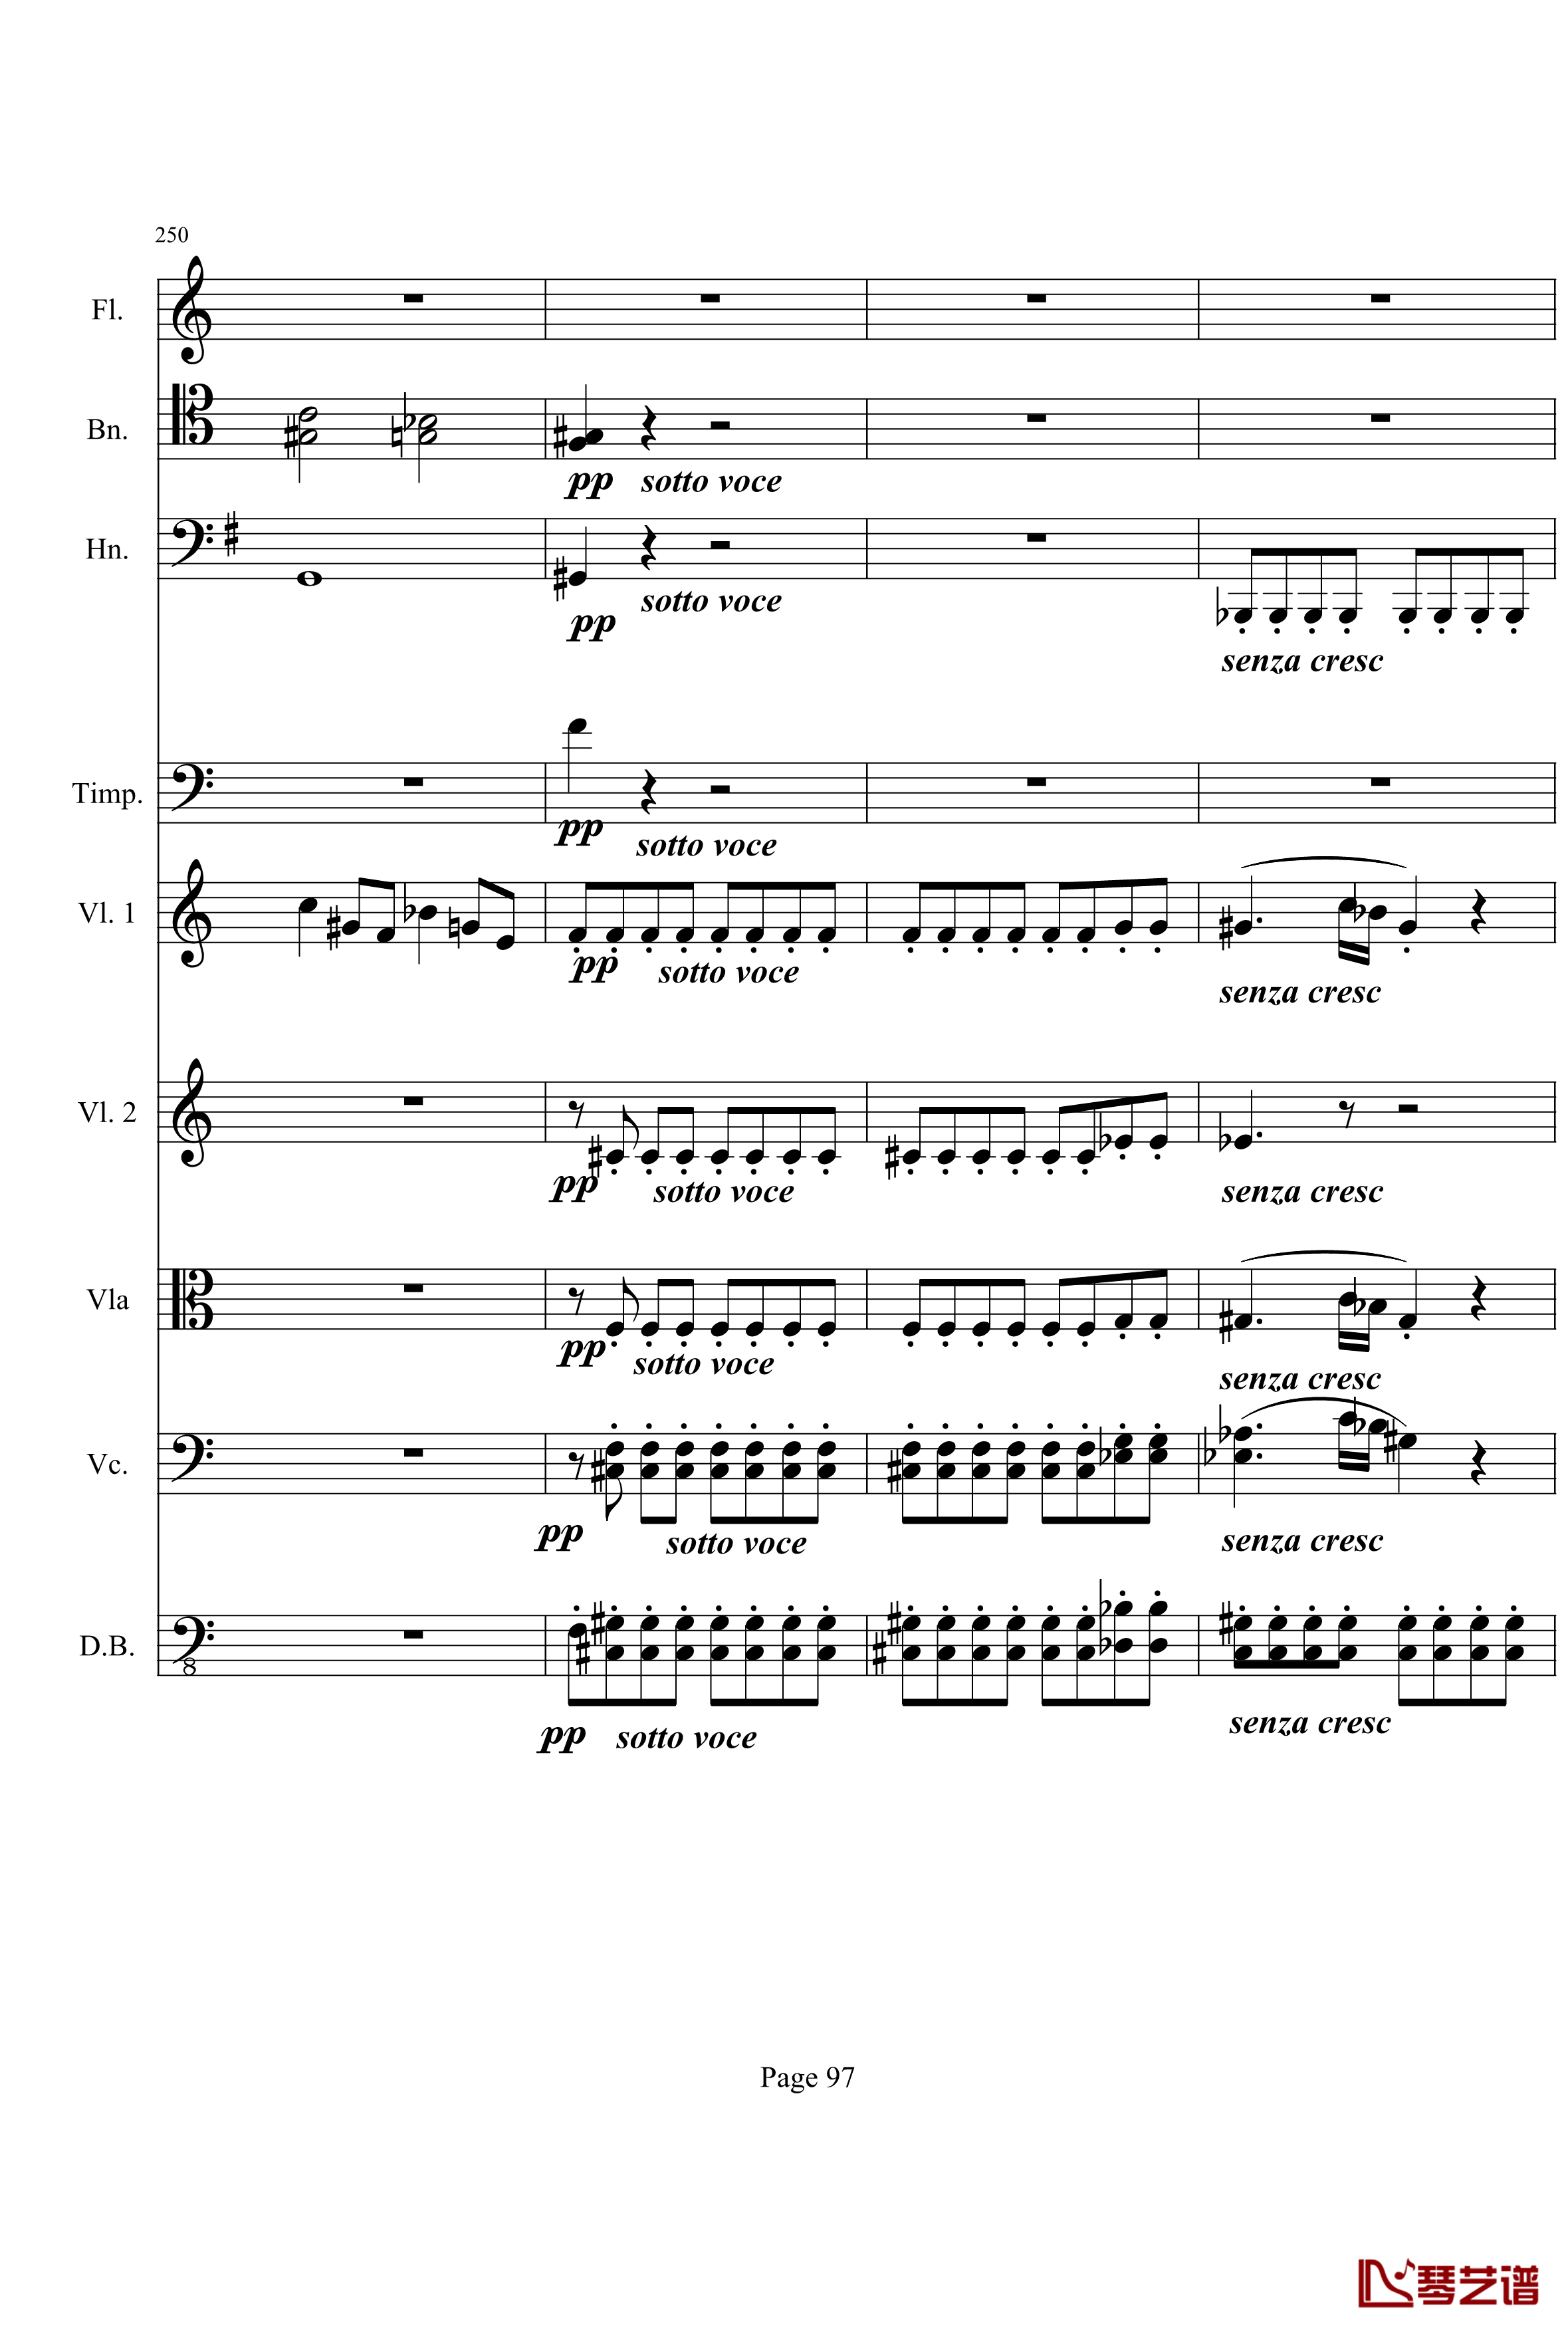 奏鸣曲之交响钢琴谱-第21-Ⅰ-贝多芬-beethoven97